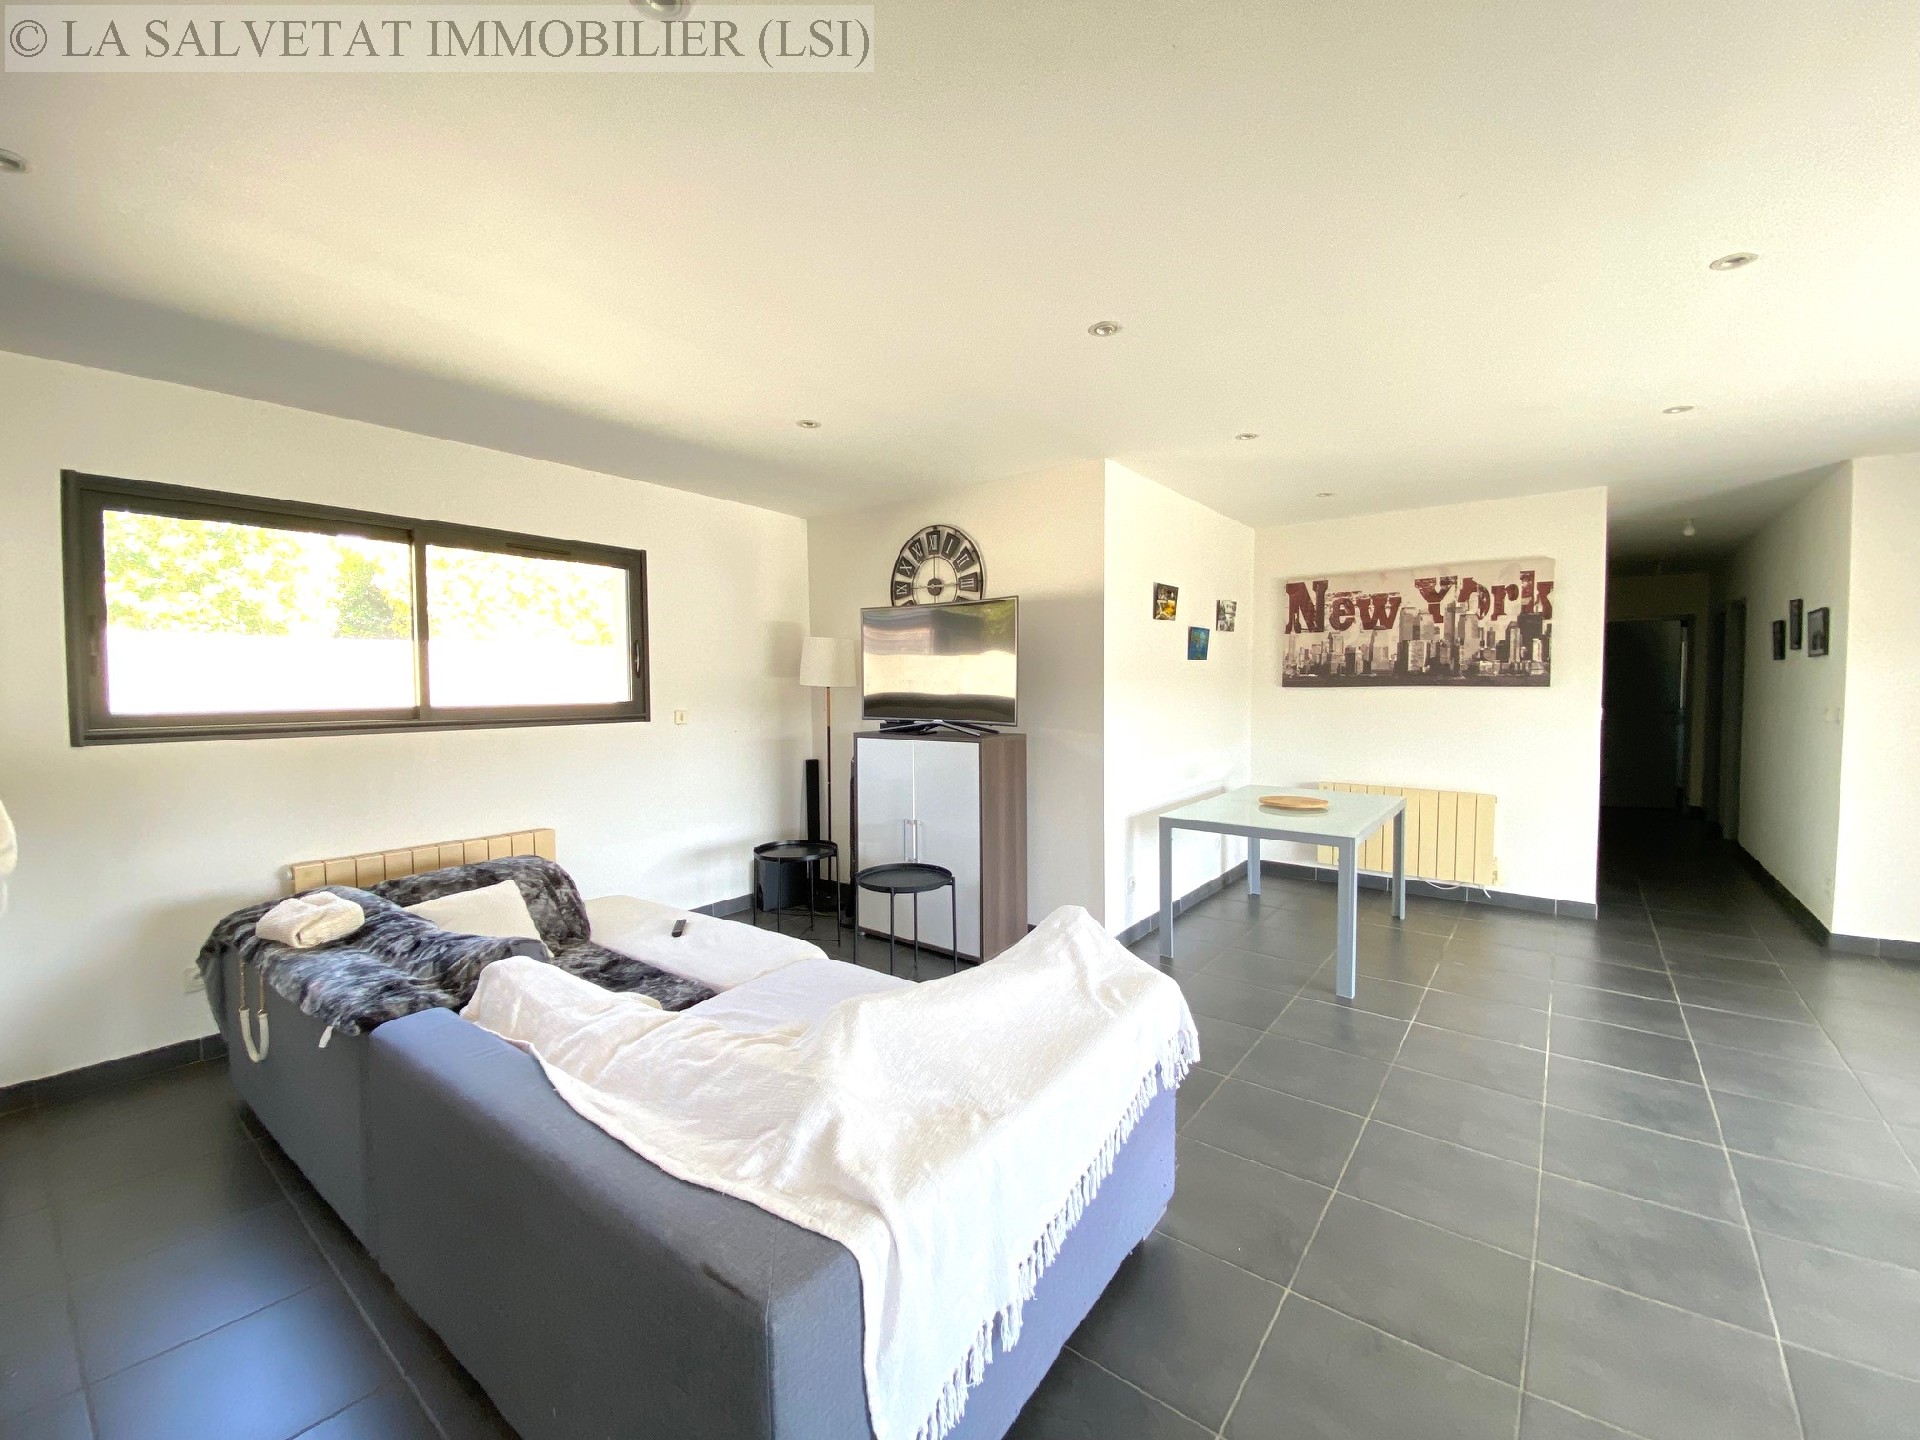 Vente maison-villa - BONREPOS SUR AUSSONNELLE<br>153 m², 5 pièces